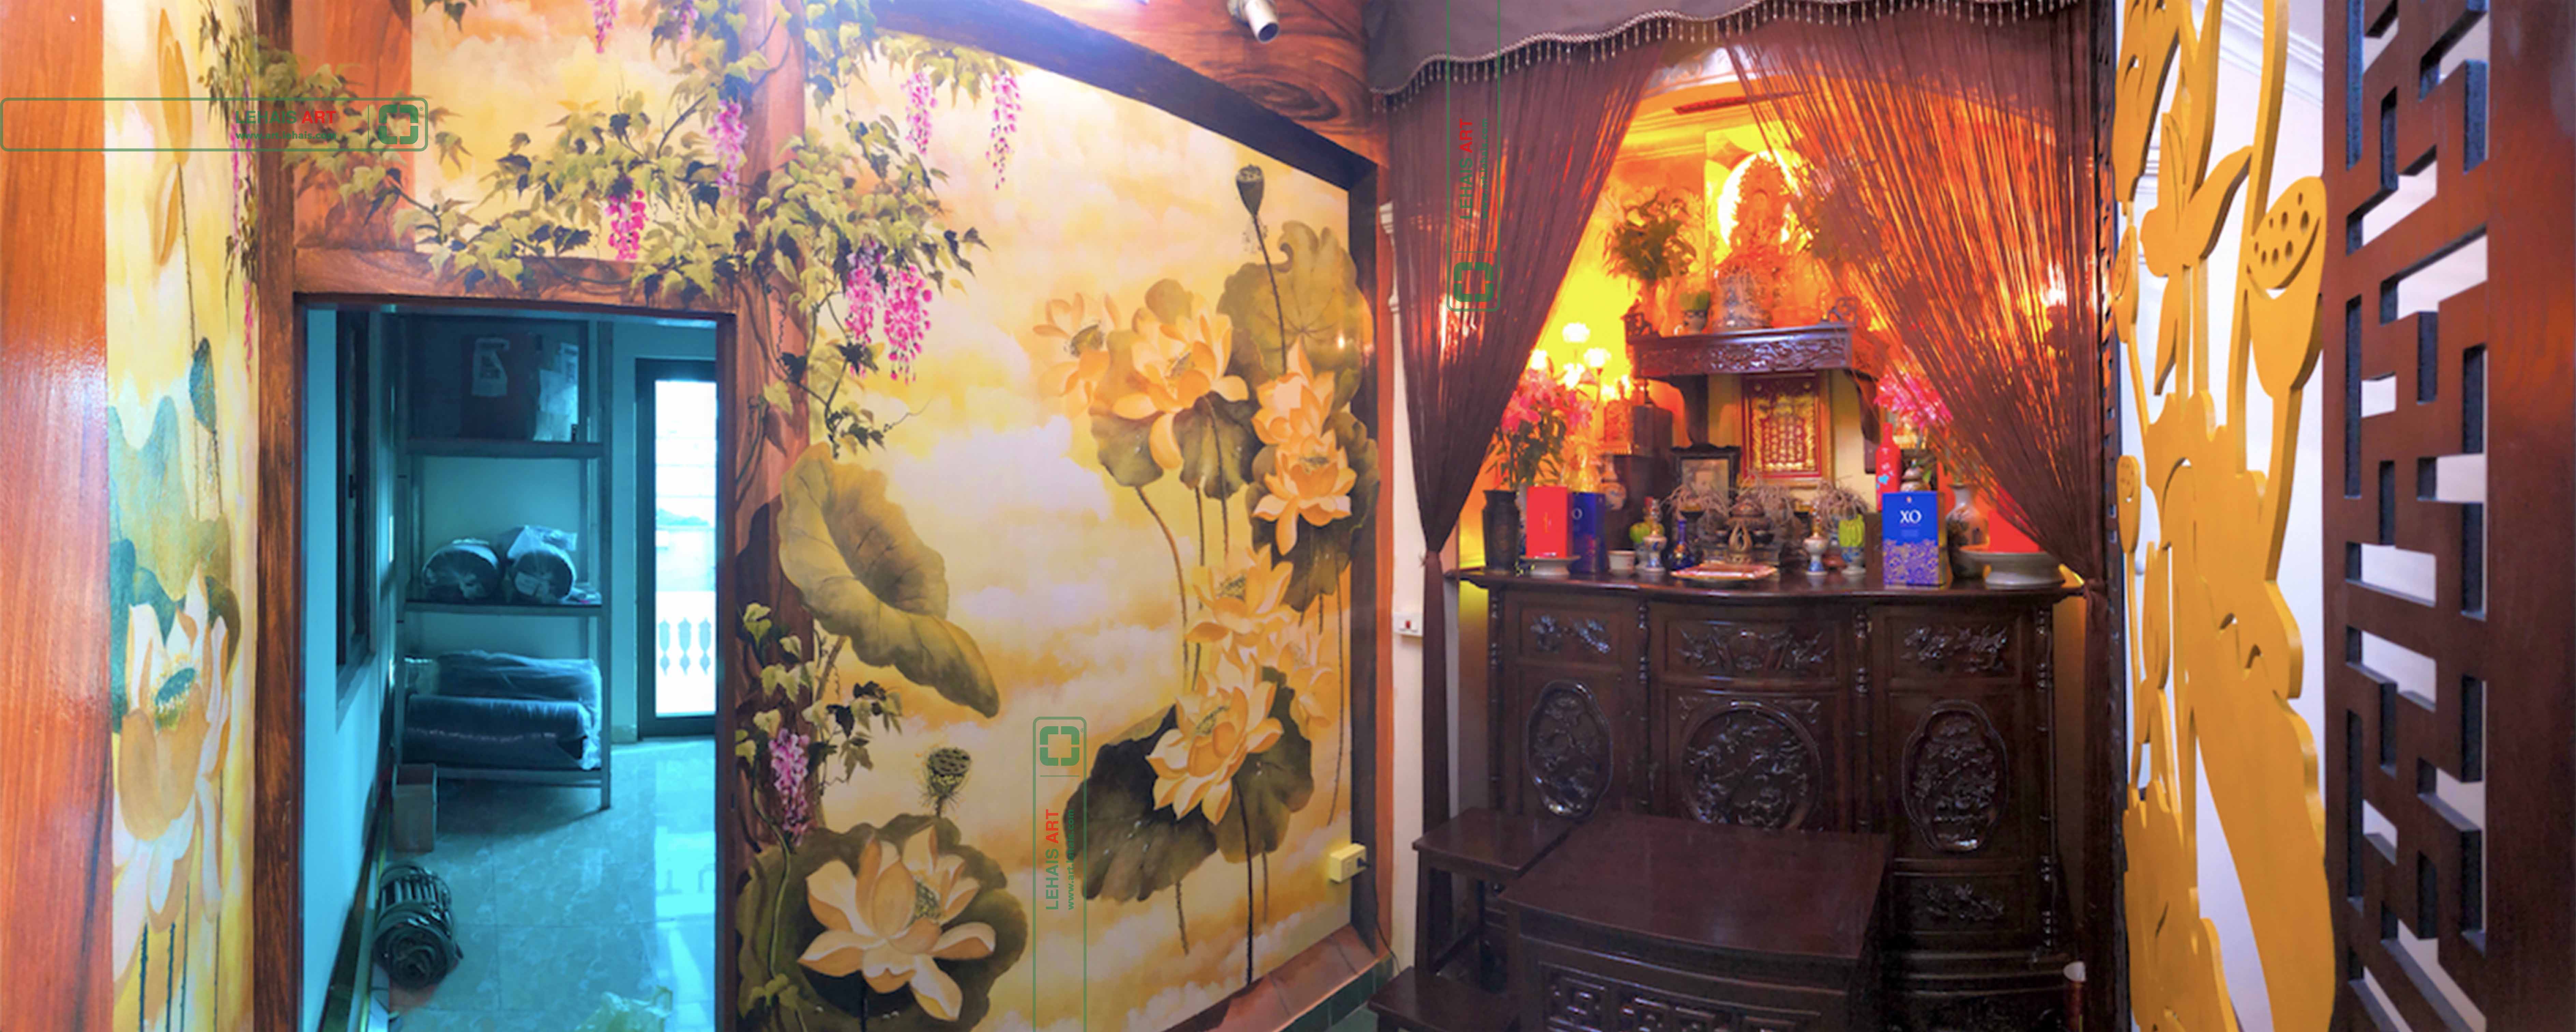 Vẽ tranh hoa sen 3D tại phòng thờ gia đình ở phố Đường Thành, quận Hoàn Kiếm, Hà Nội - TT194LHAR 5